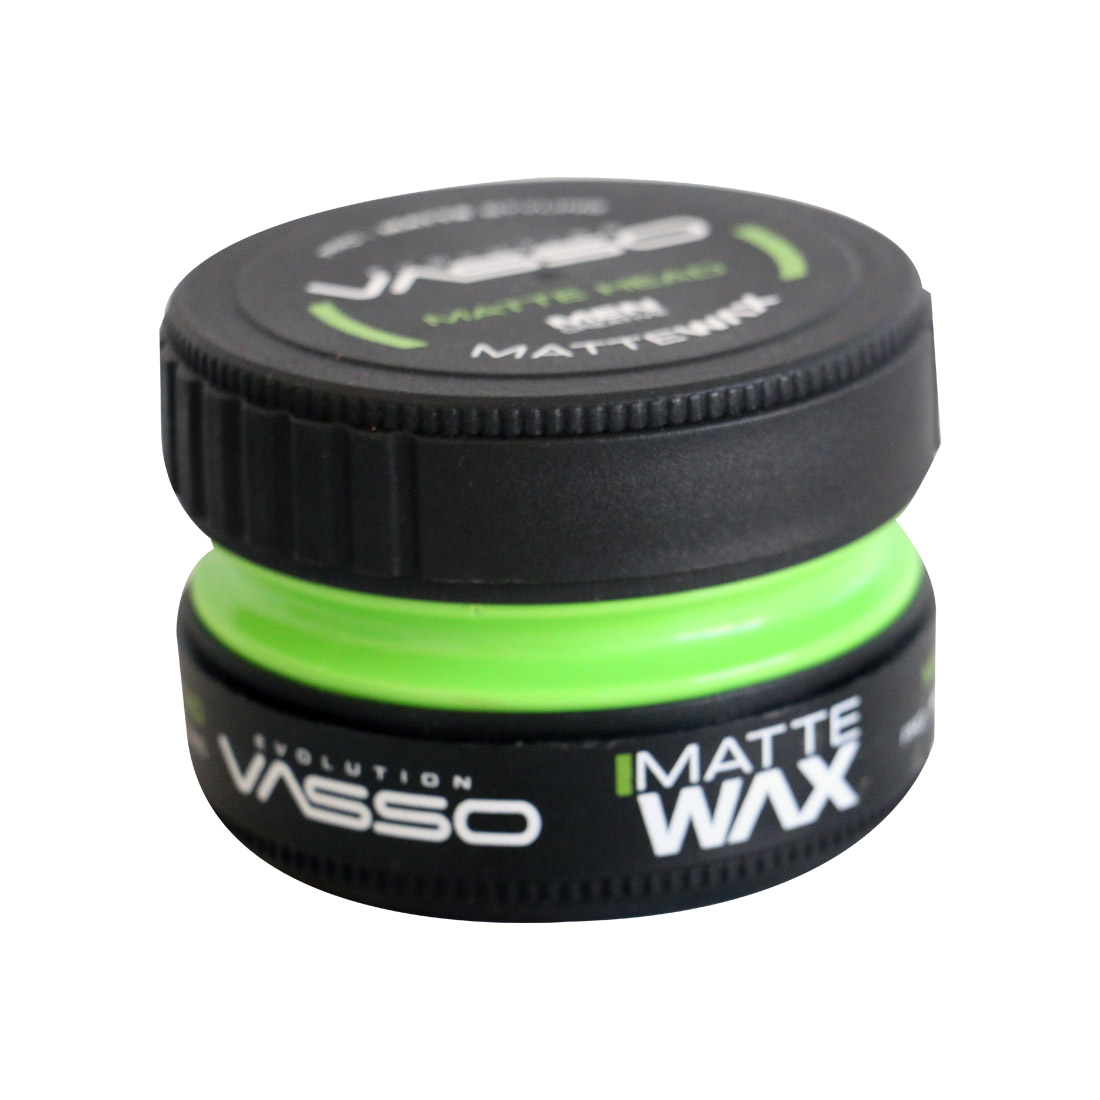 VASSO HAIR STYLING WAX MATTE WAX ( MATTE HEAD) 150 ML – CC Hair & Beauty